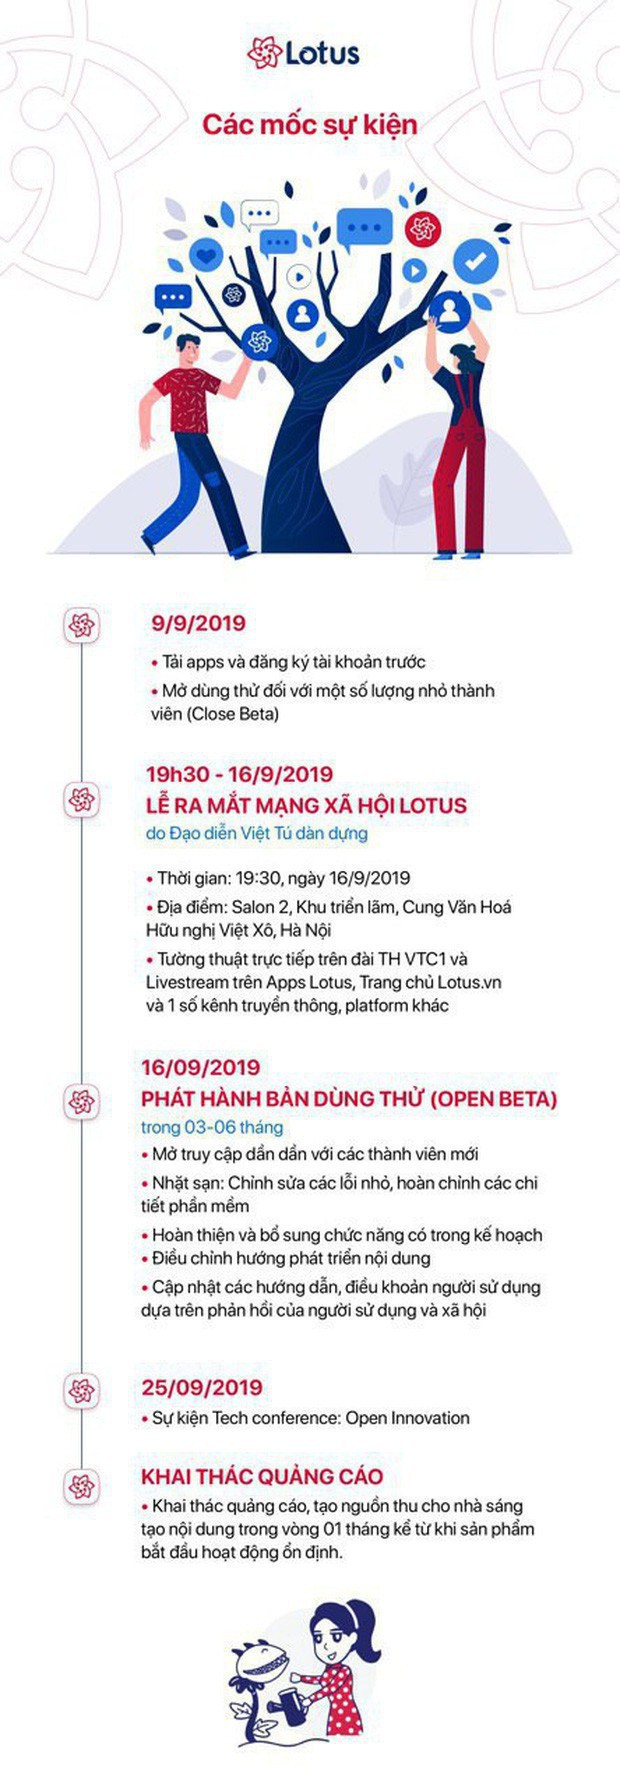 Những chia sẻ ấn tượng của ông Nguyễn Thế Tân - TGĐ VCCorp trong buổi ra mắt MXH Lotus - Ảnh 8.